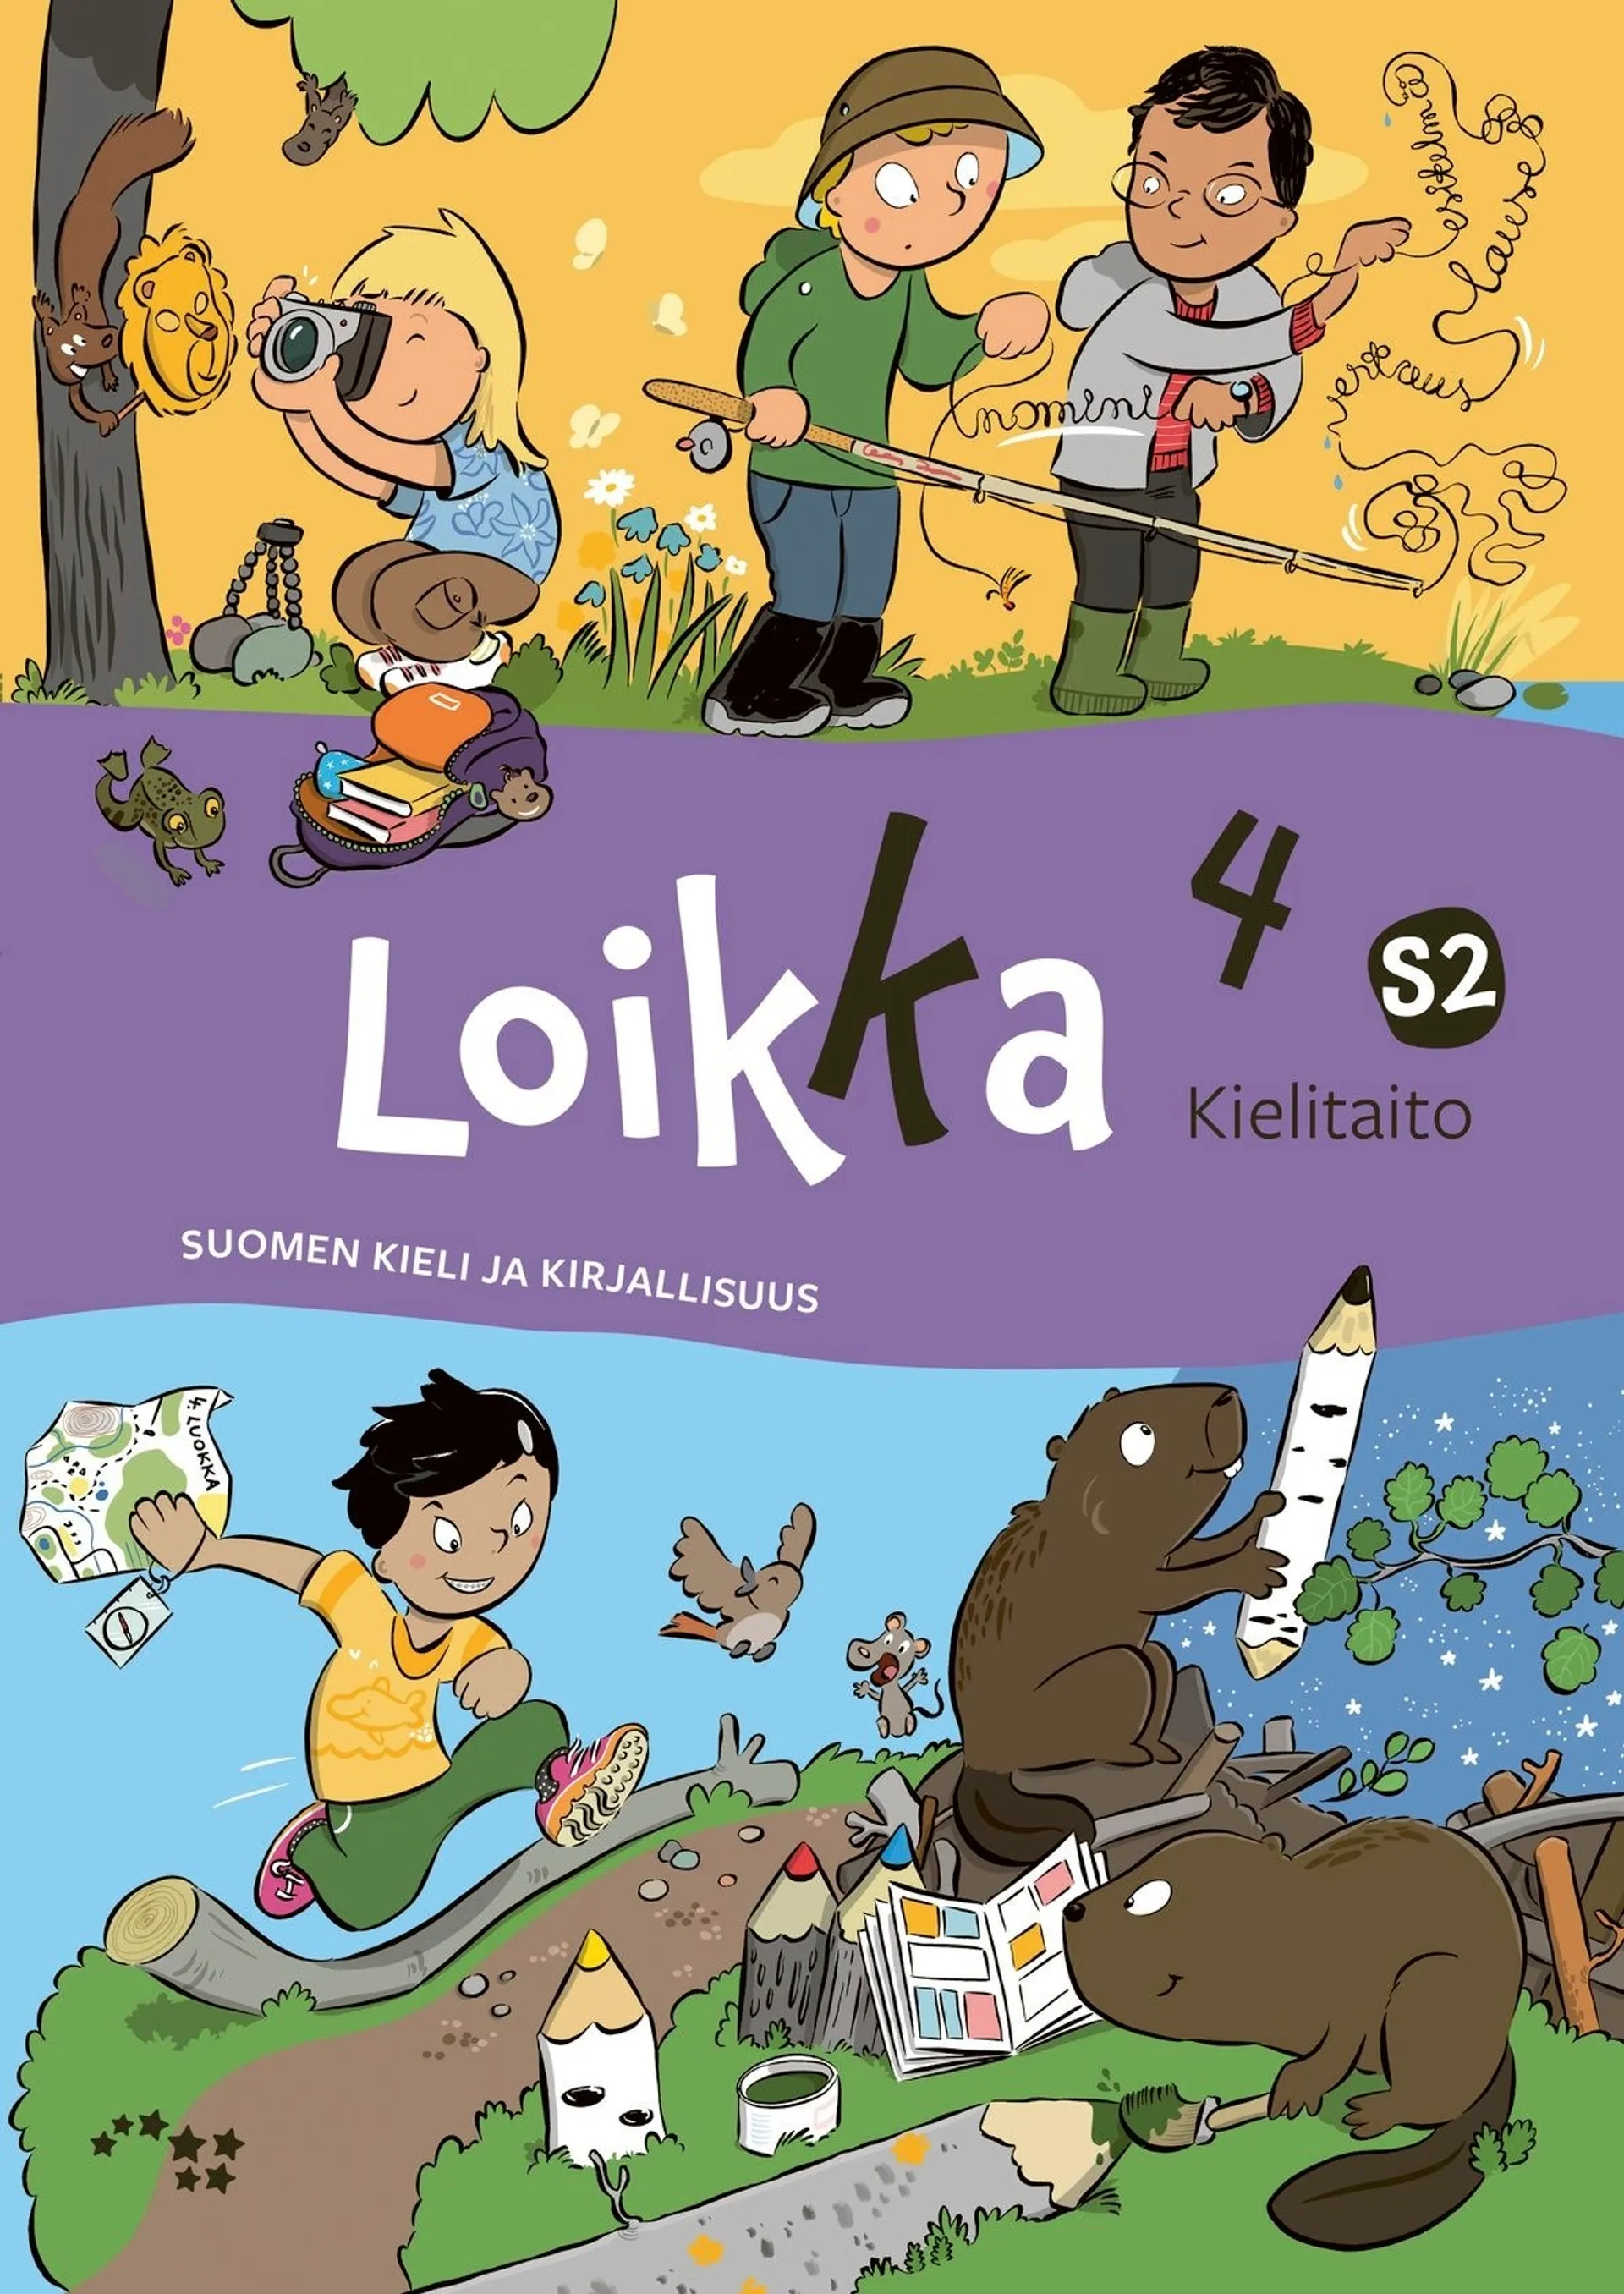 Heiskala, Loikka 4 Kielitaito S2 - Suomen kieli ja kirjallisuus